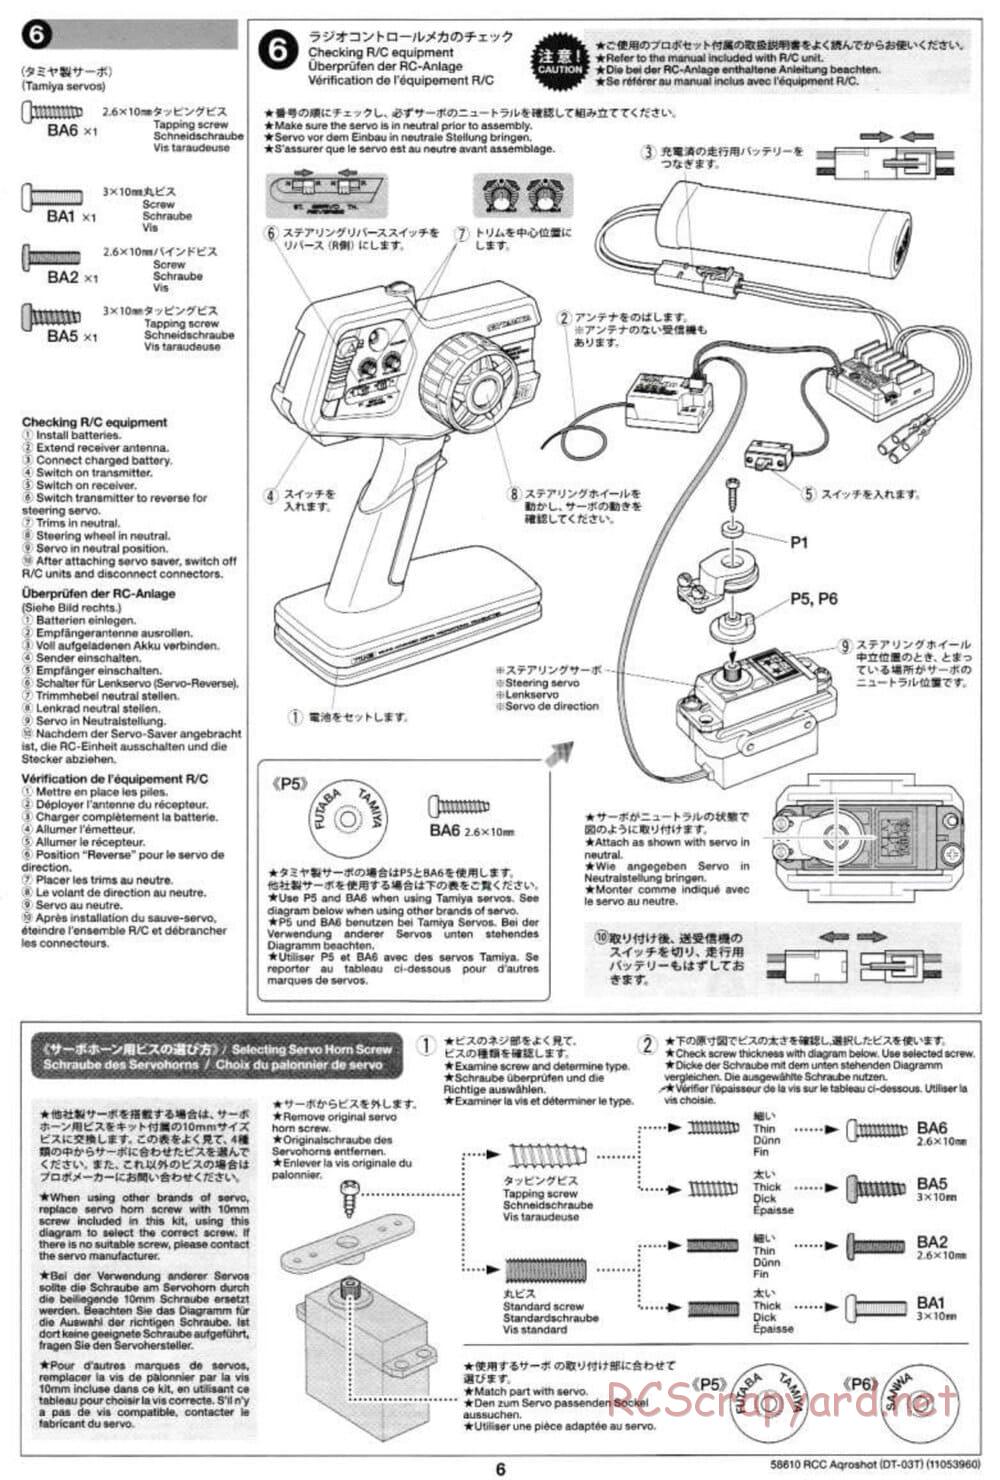 Tamiya - Aqroshot Chassis - Manual - Page 6